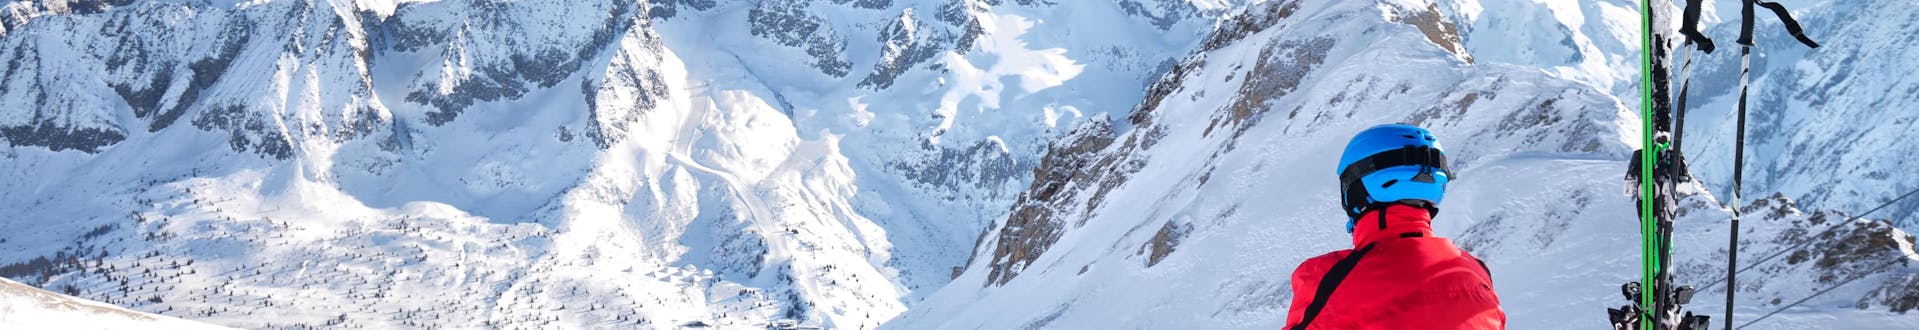 Uno sciatore, seduto in cima alla pista da sci,osserva dall'alto il comprensorio sciistico di Passo del Tonale, dove i visitatori possono prenotare lezioni di sci con una delle scuole di sci locali.